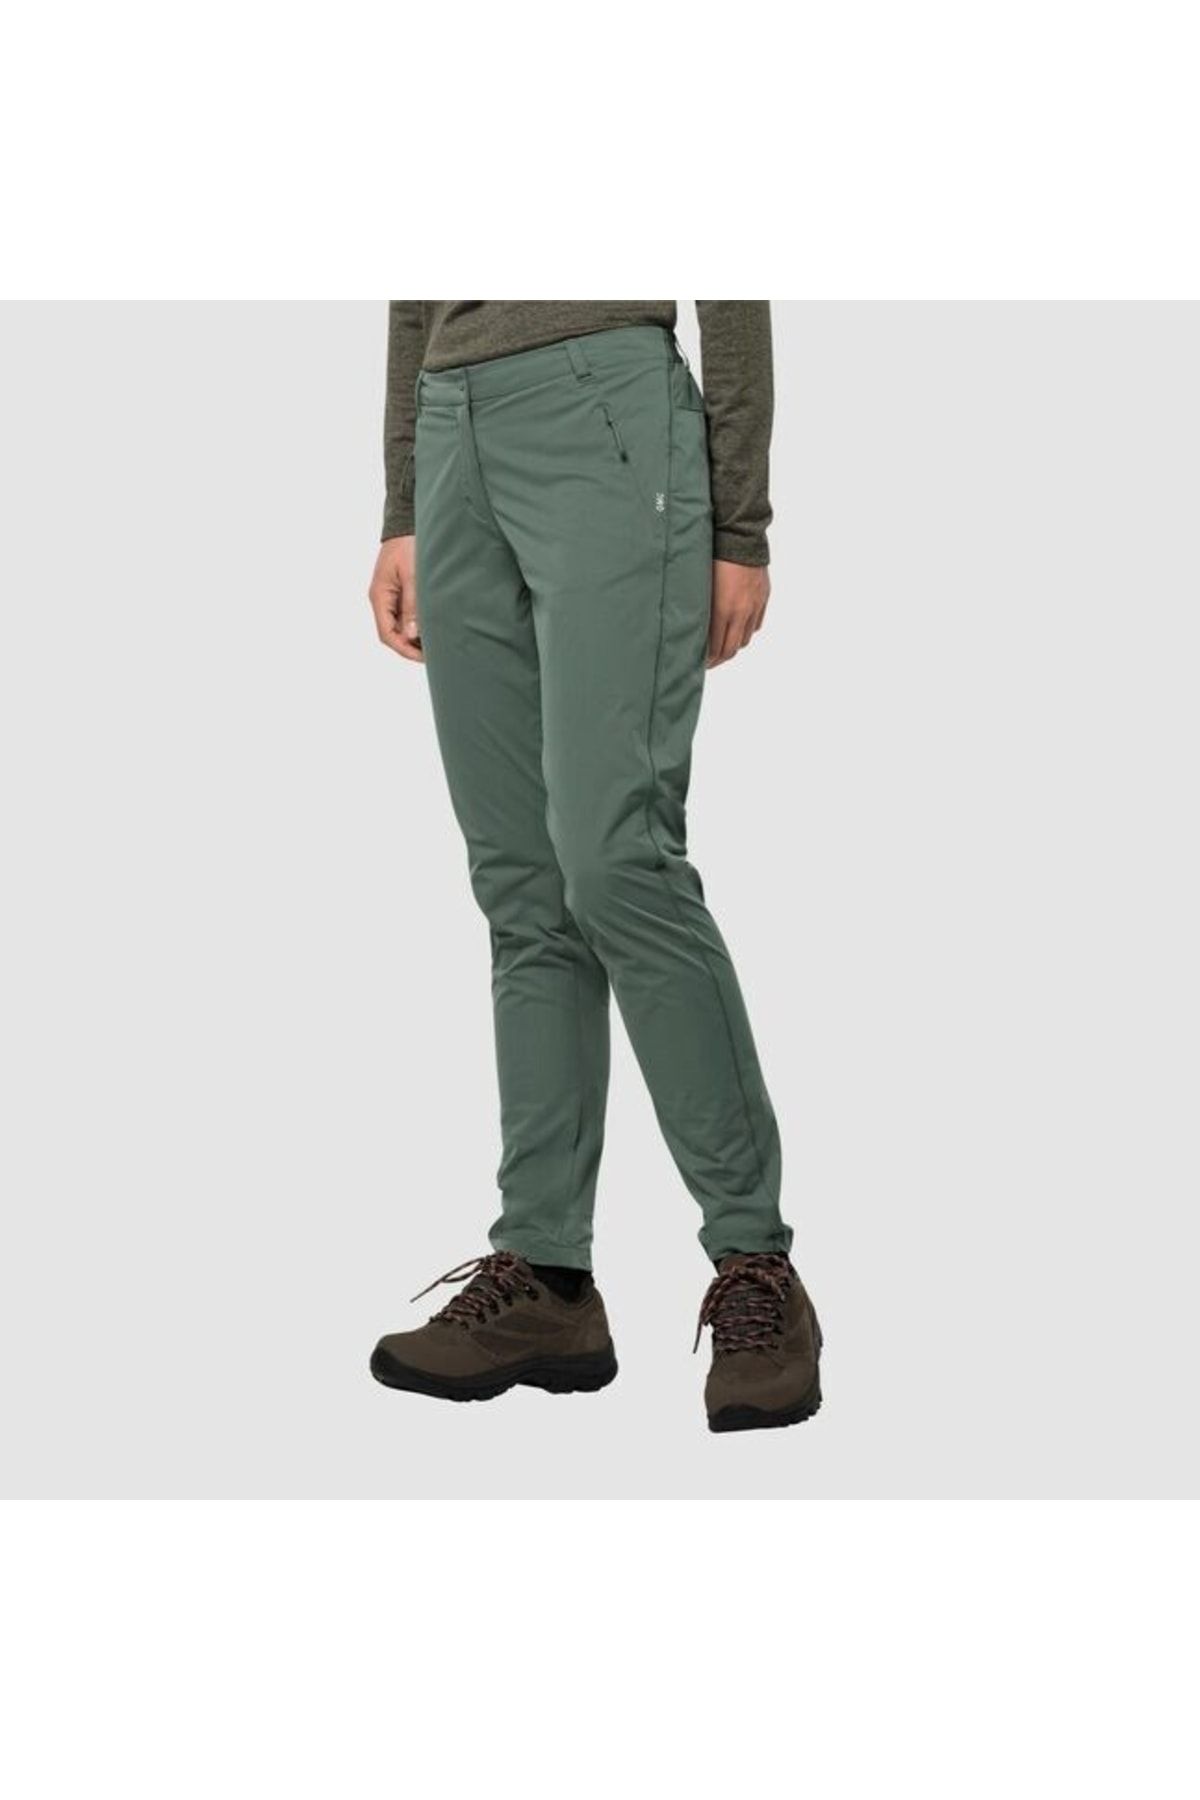 Jack Wolfskin Tasman Pant W Kadın Outdoor Yeşil Pantolon 1507311-4311